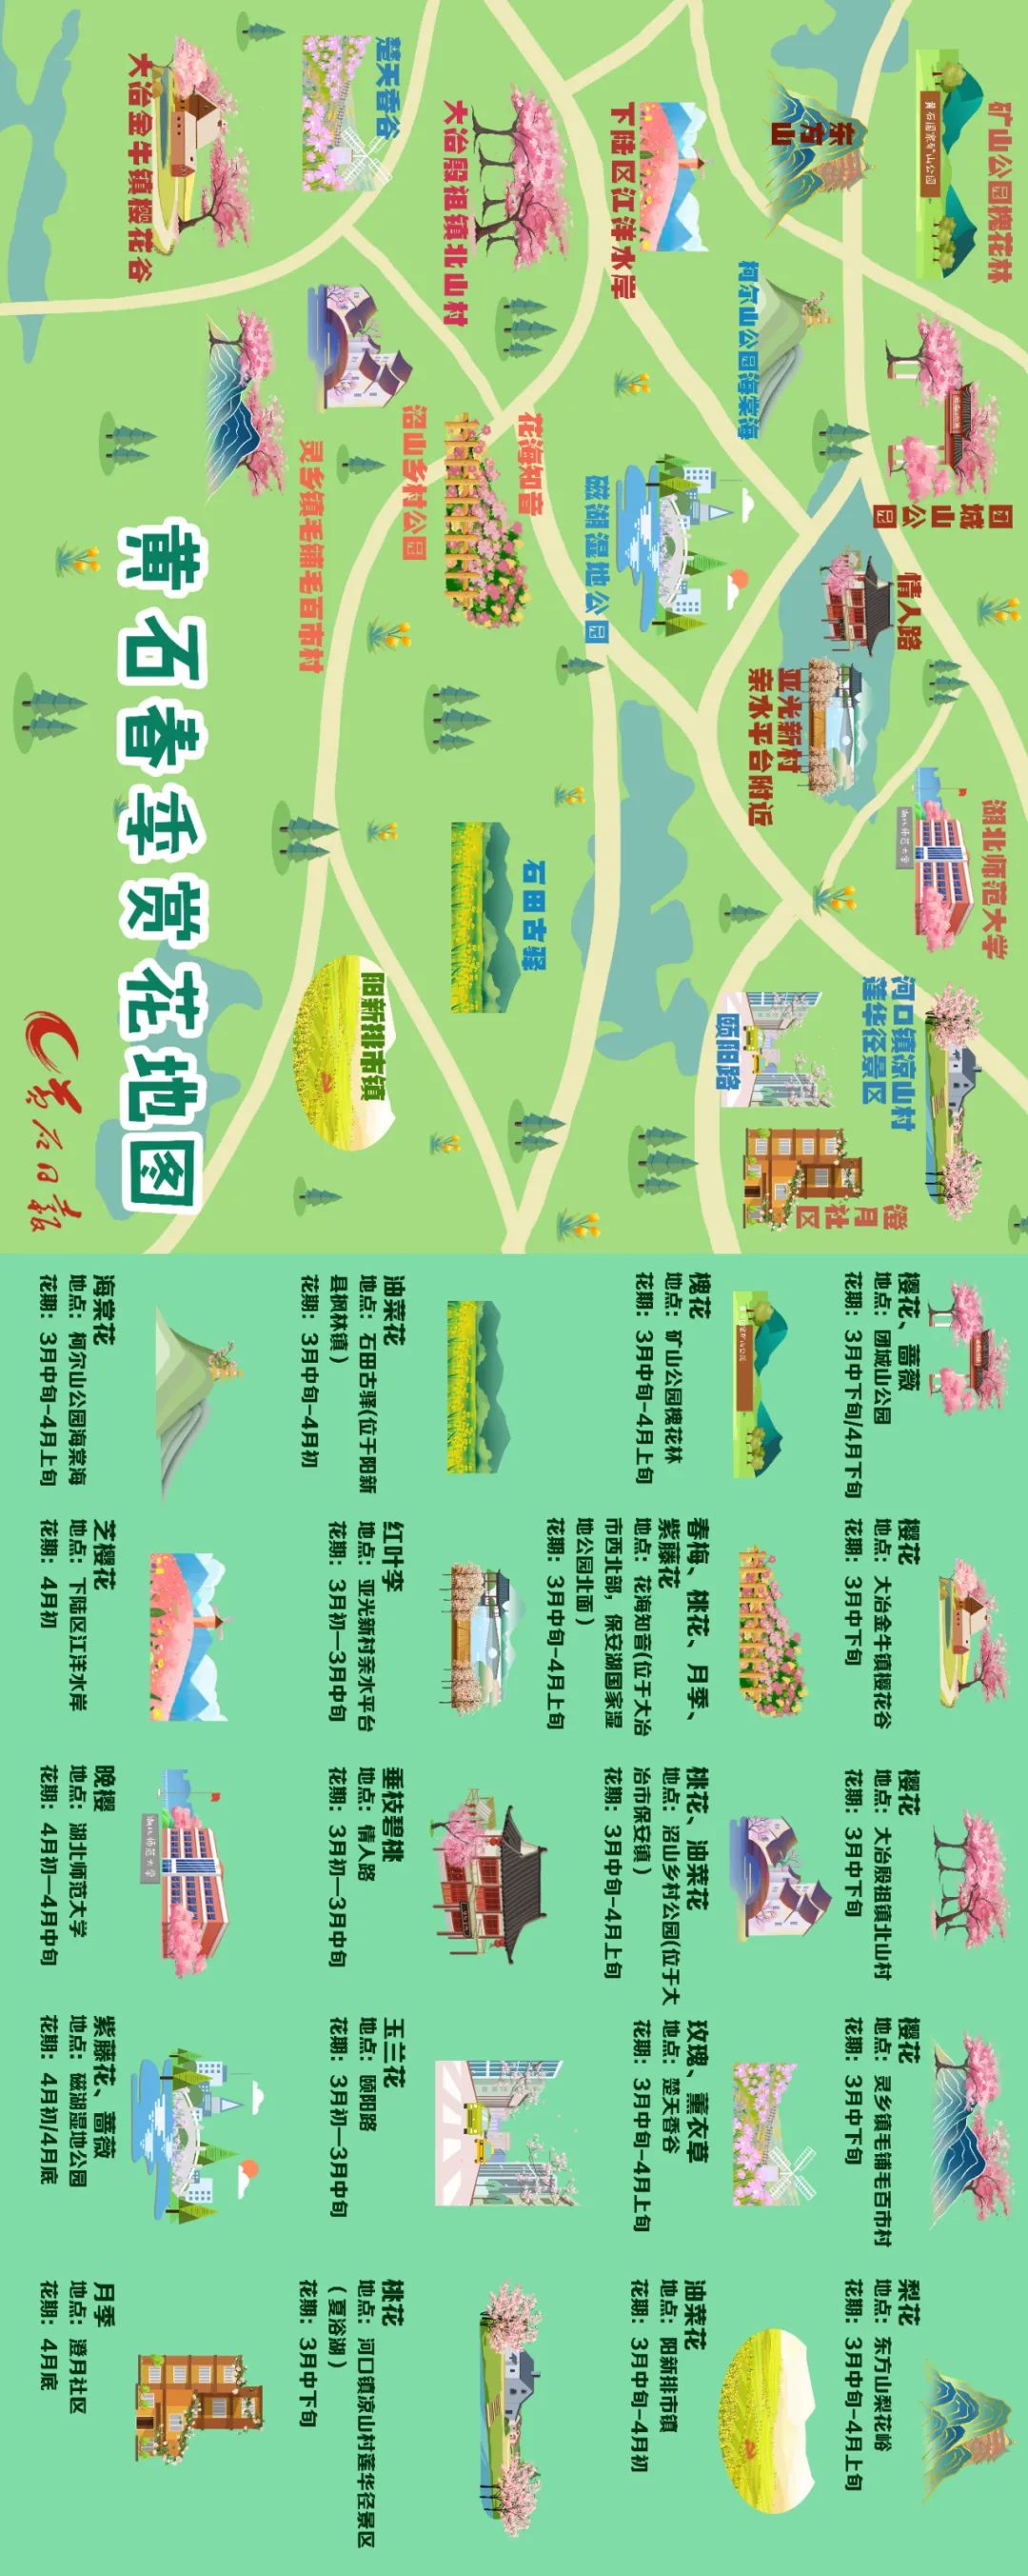 中国地图pdf下载-中国地图全国高清版下载pdf-当易网